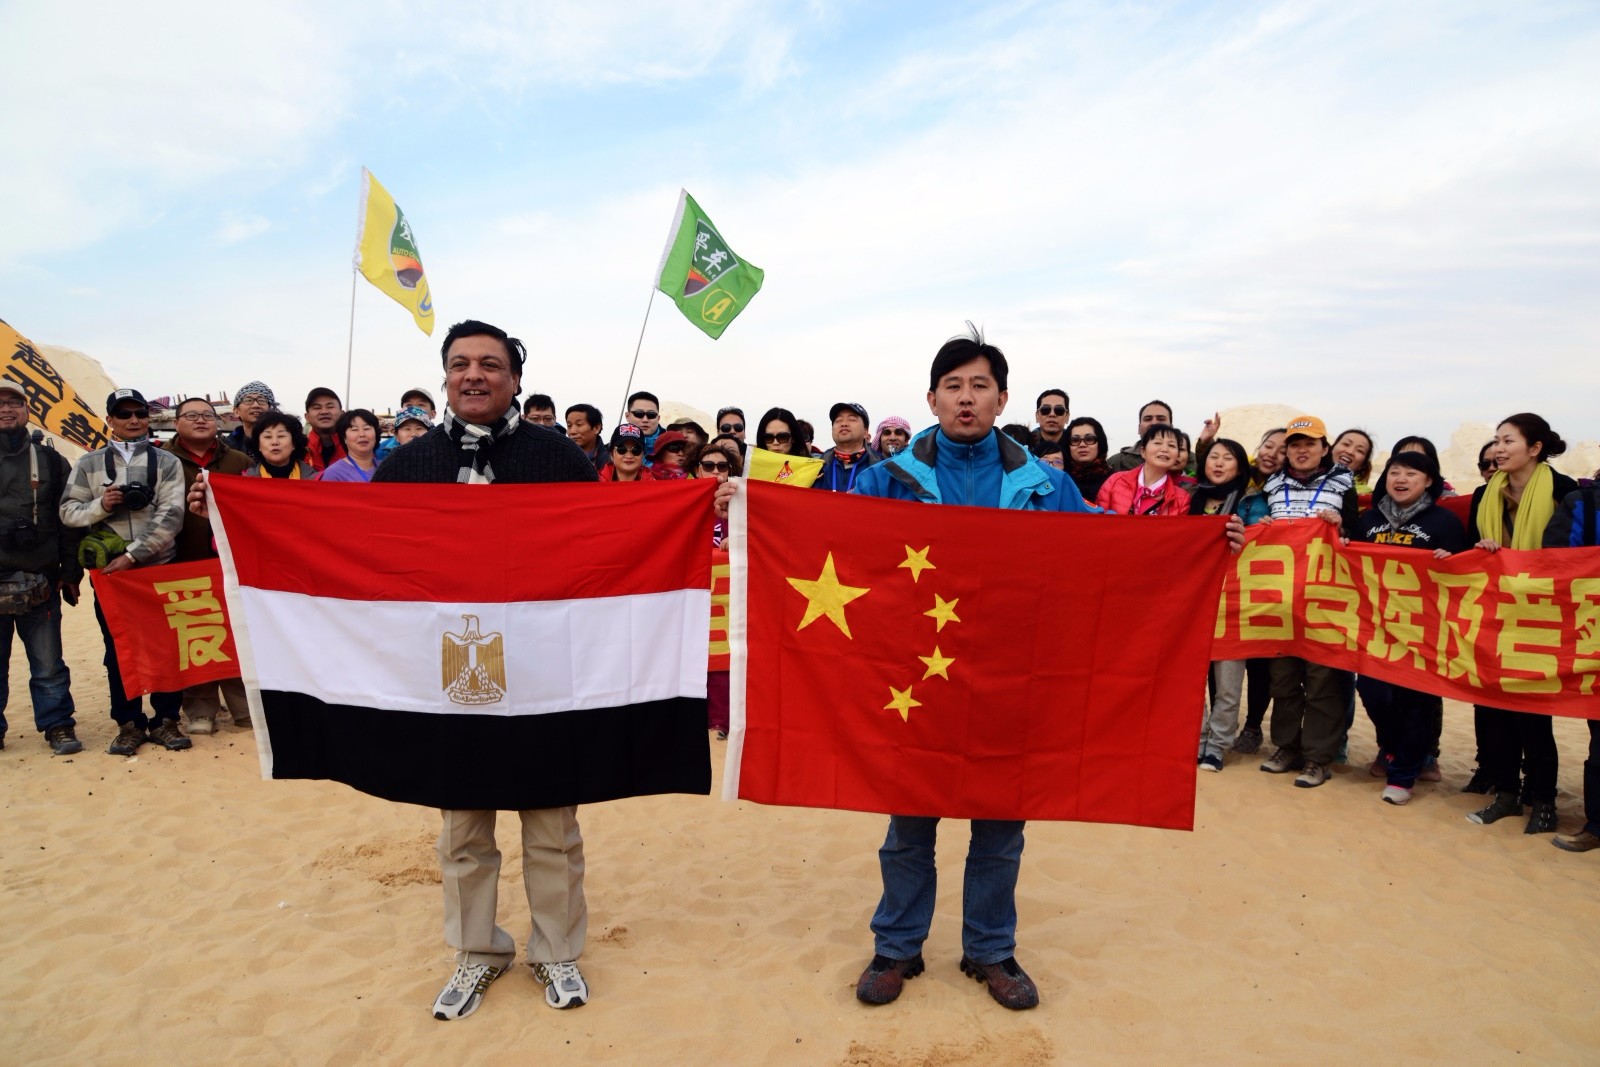 200勇士自驾埃及“撒哈拉英雄会”6月20日北京广州两地盛大出发